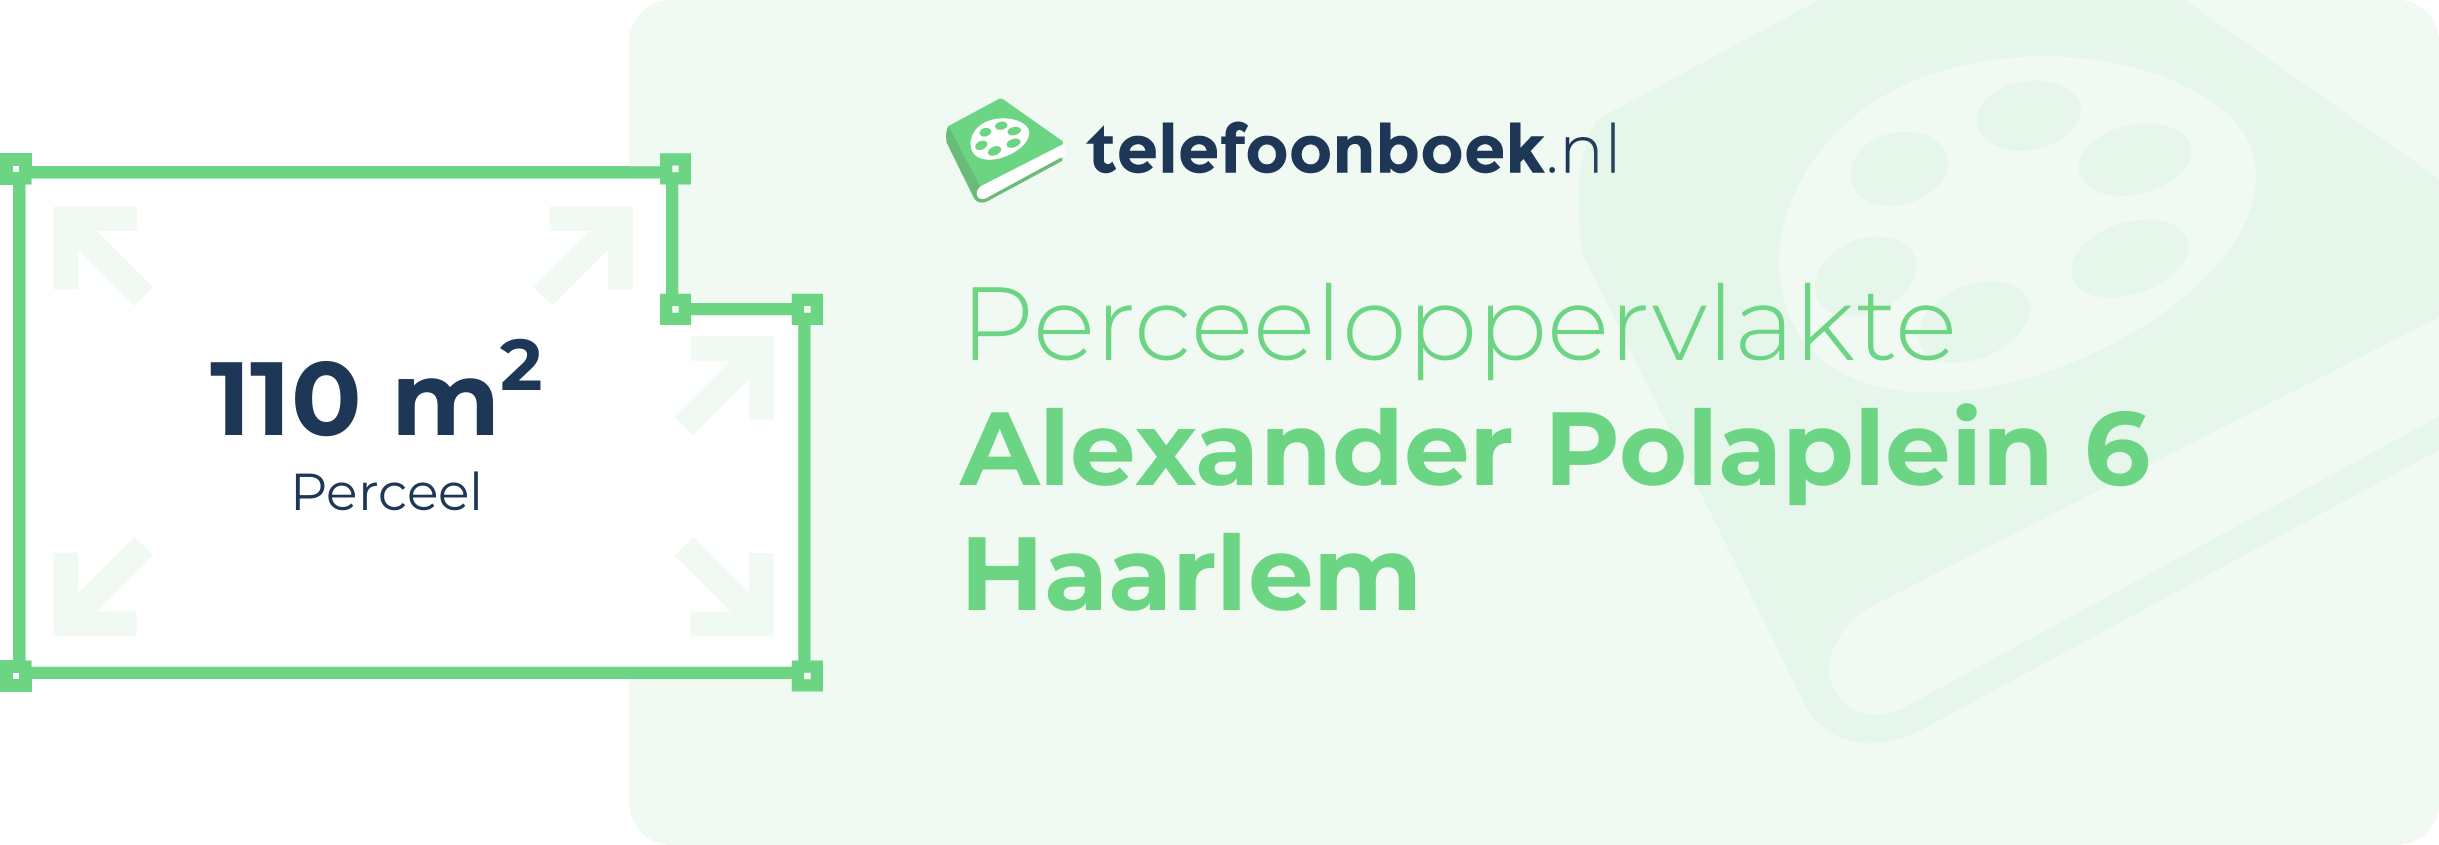 Perceeloppervlakte Alexander Polaplein 6 Haarlem